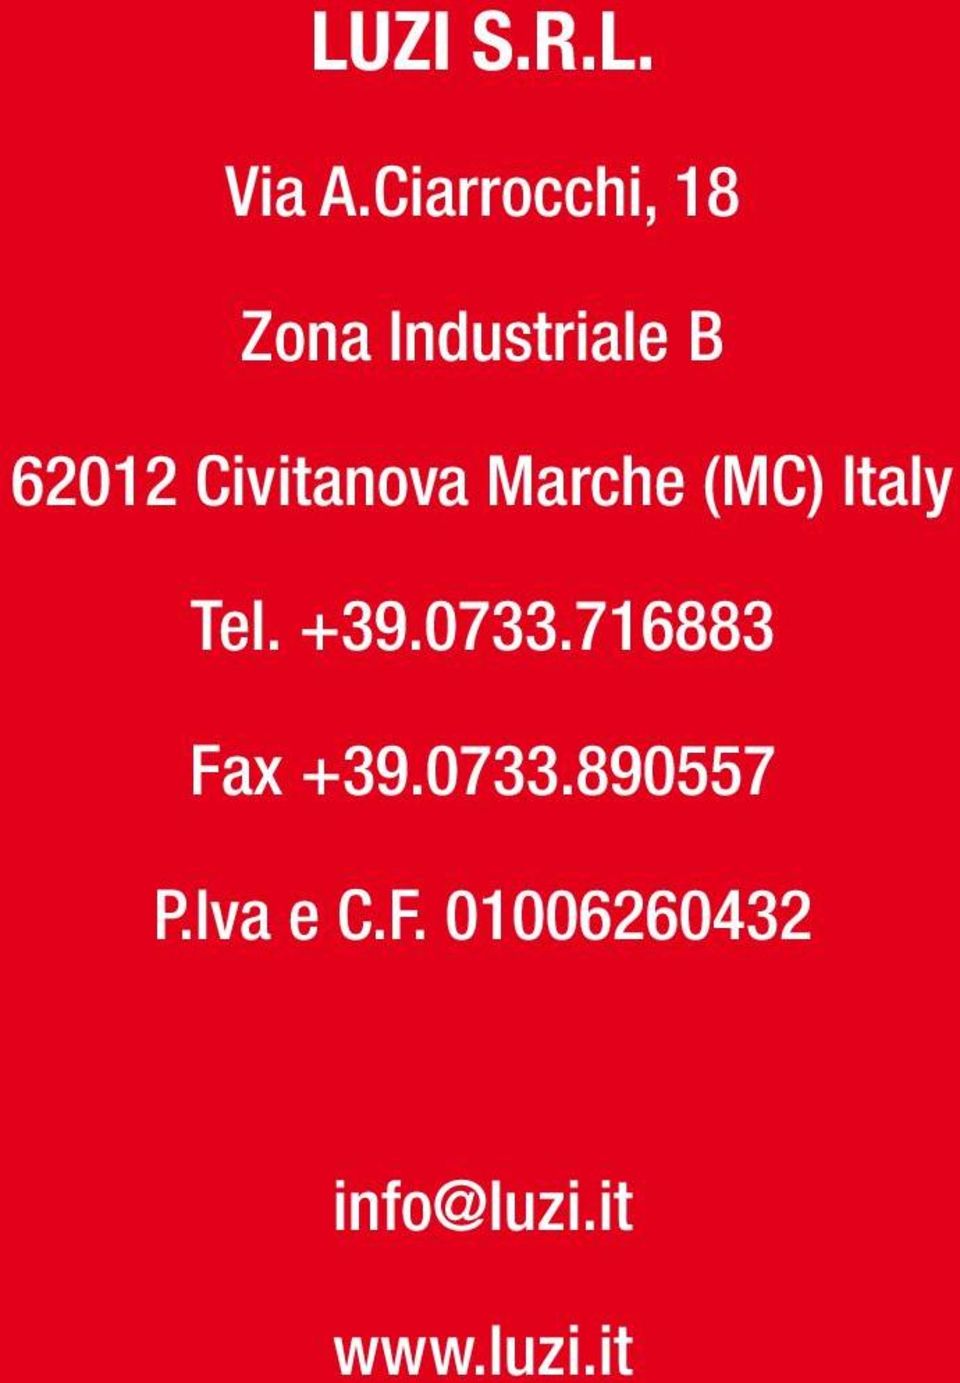 Civitanova Marche (MC) Italy Tel. +39.0733.